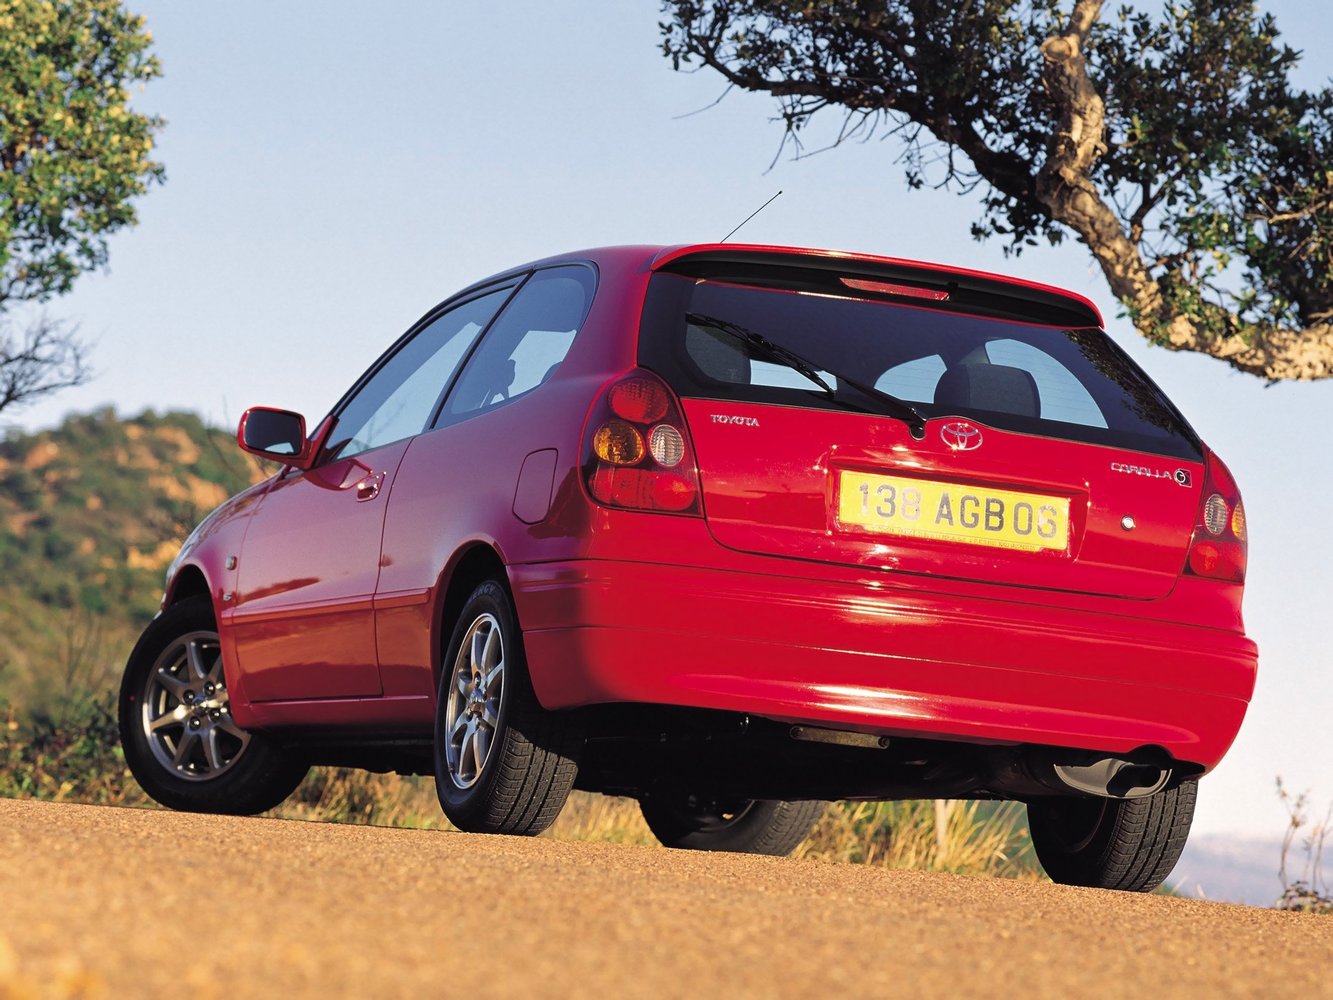 хэтчбек 3 дв. Toyota Corolla 1999 - 2002г выпуска модификация 1.3 AT (85 л.с.)